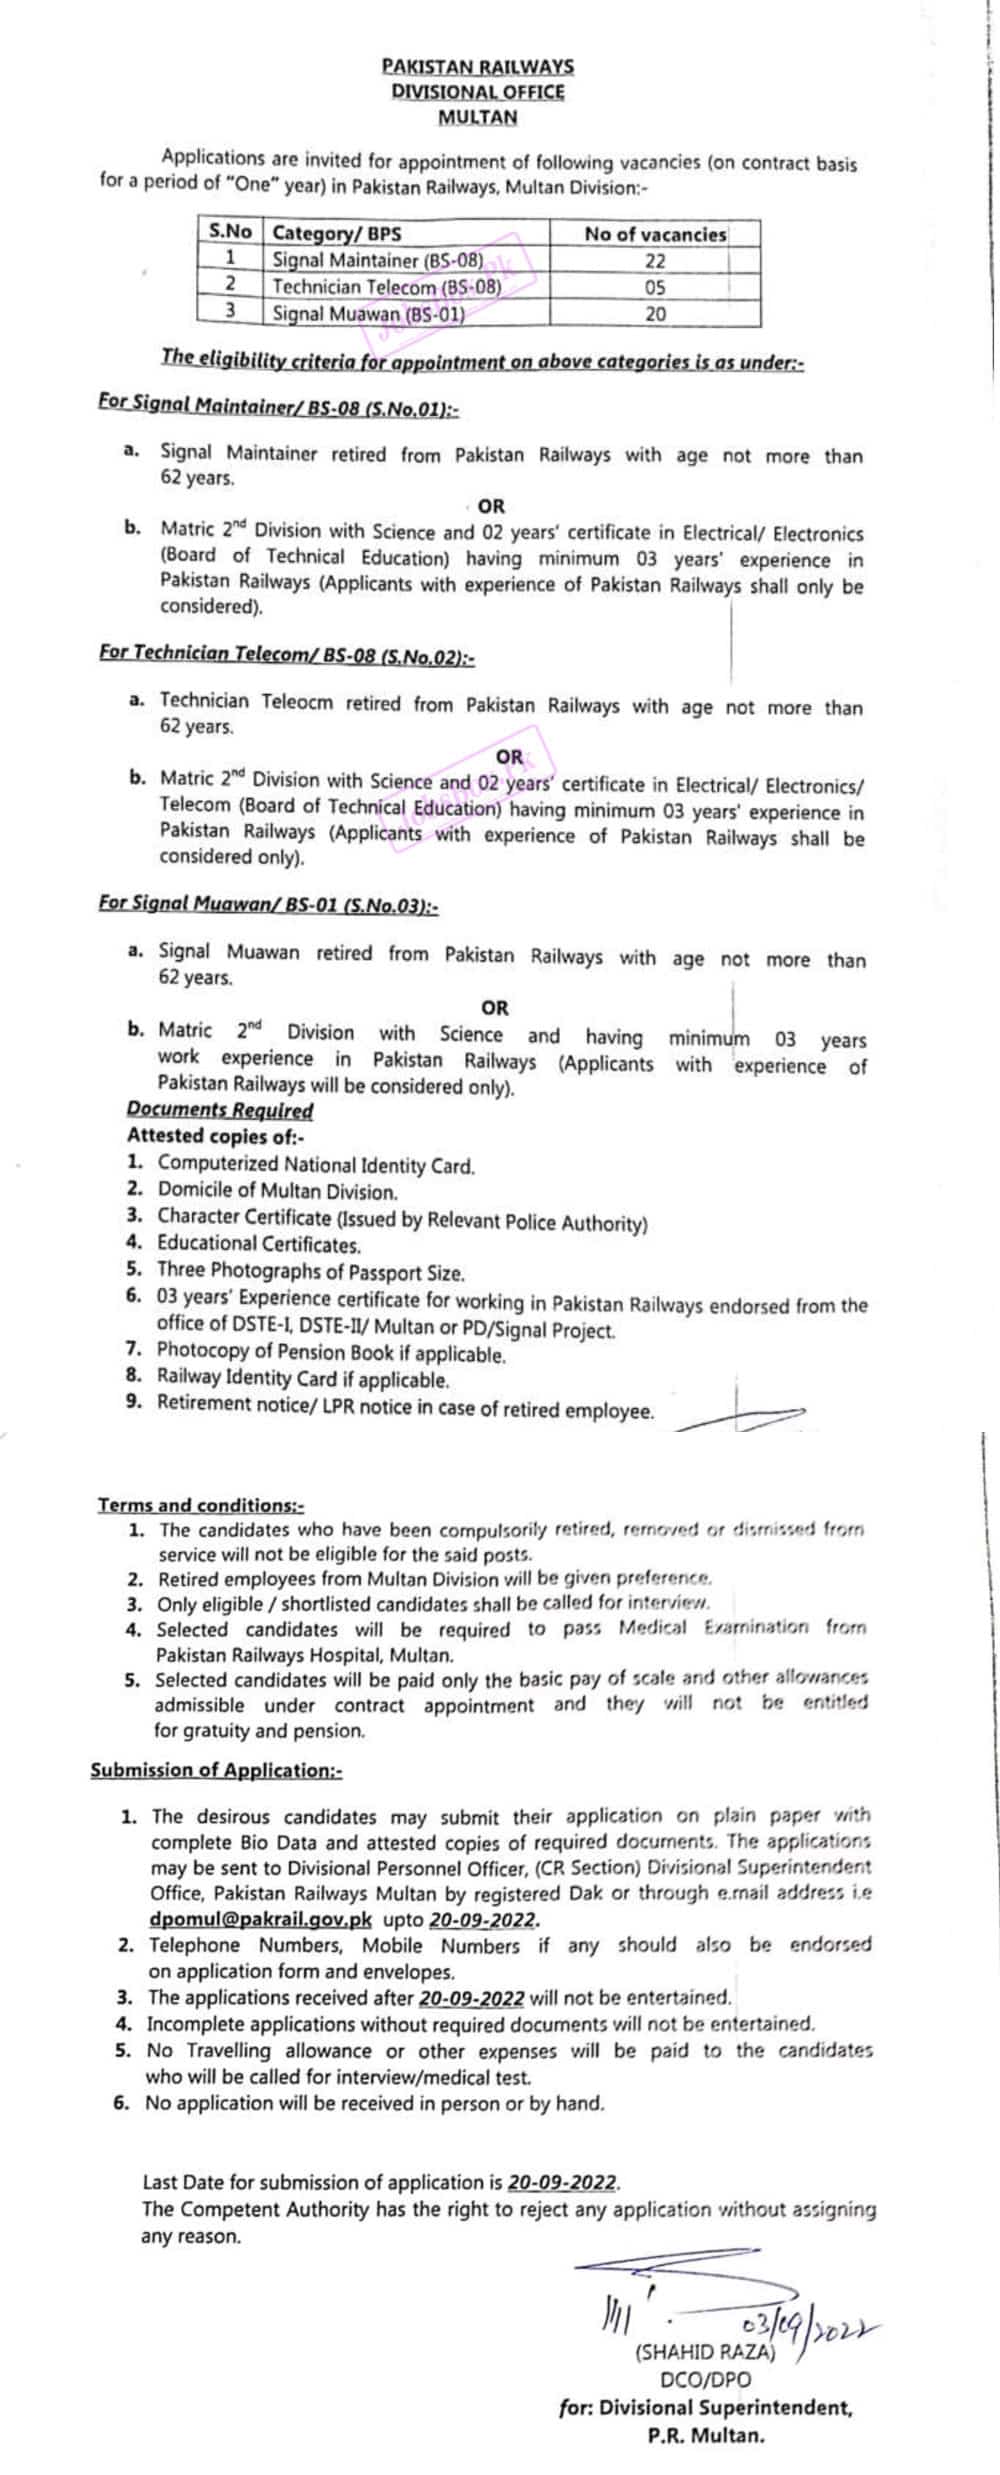 Pakistan Railways Divisional Office Multan Jobs 2022